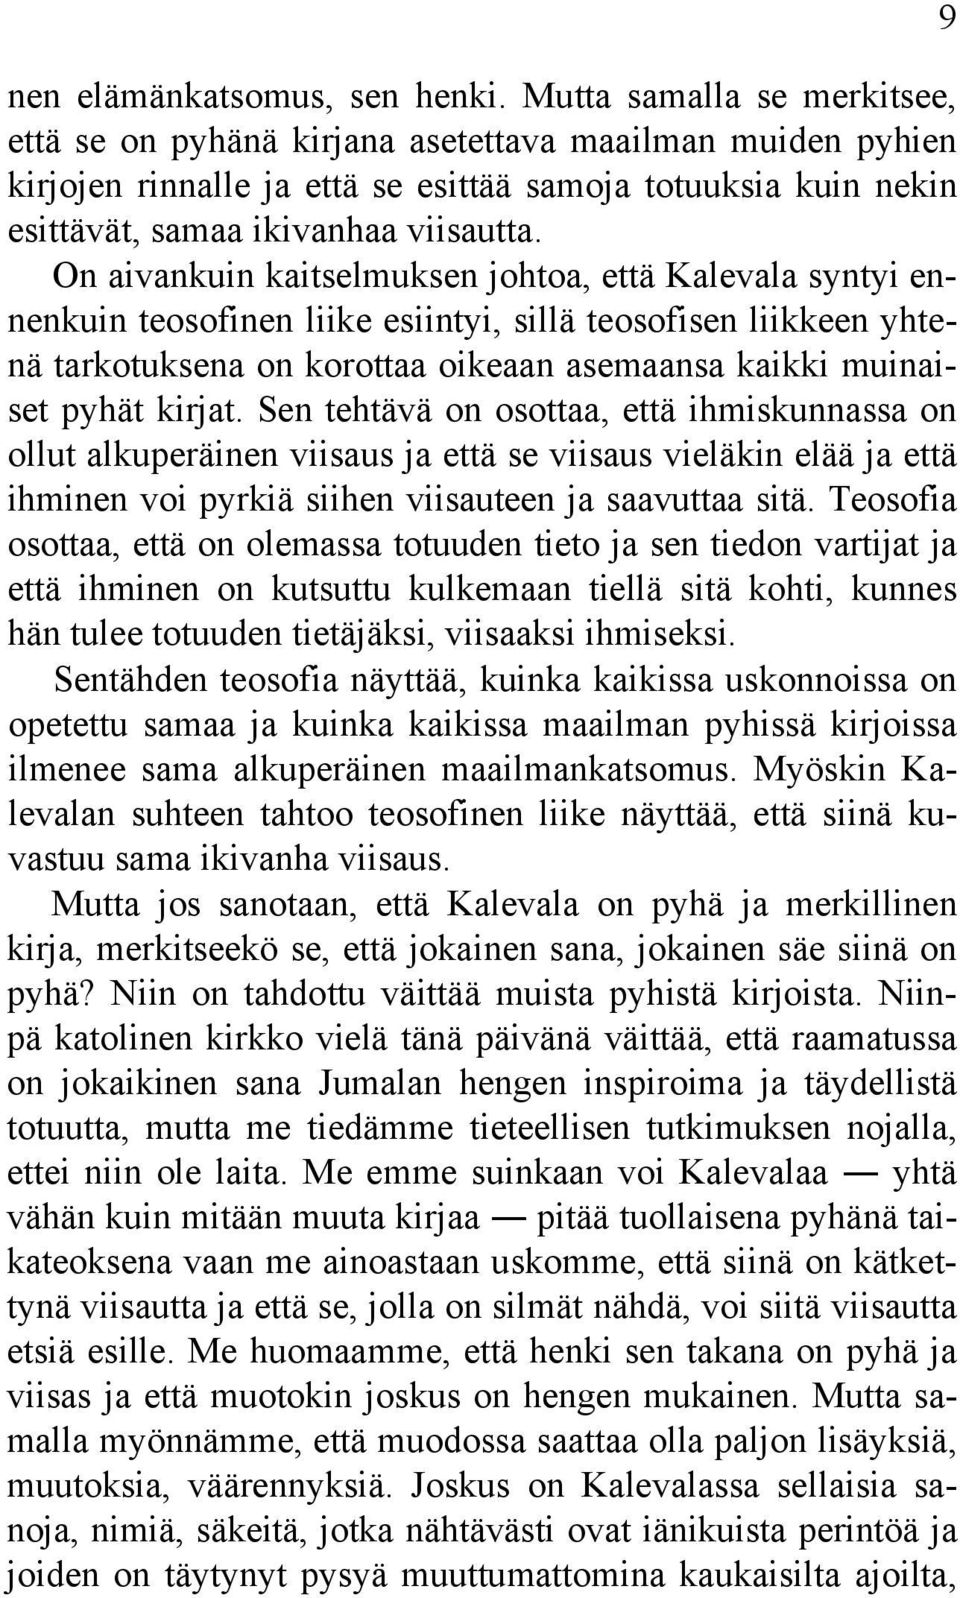 On aivankuin kaitselmuksen johtoa, että Kalevala syntyi ennenkuin teosofinen liike esiintyi, sillä teosofisen liikkeen yhtenä tarkotuksena on korottaa oikeaan asemaansa kaikki muinaiset pyhät kirjat.